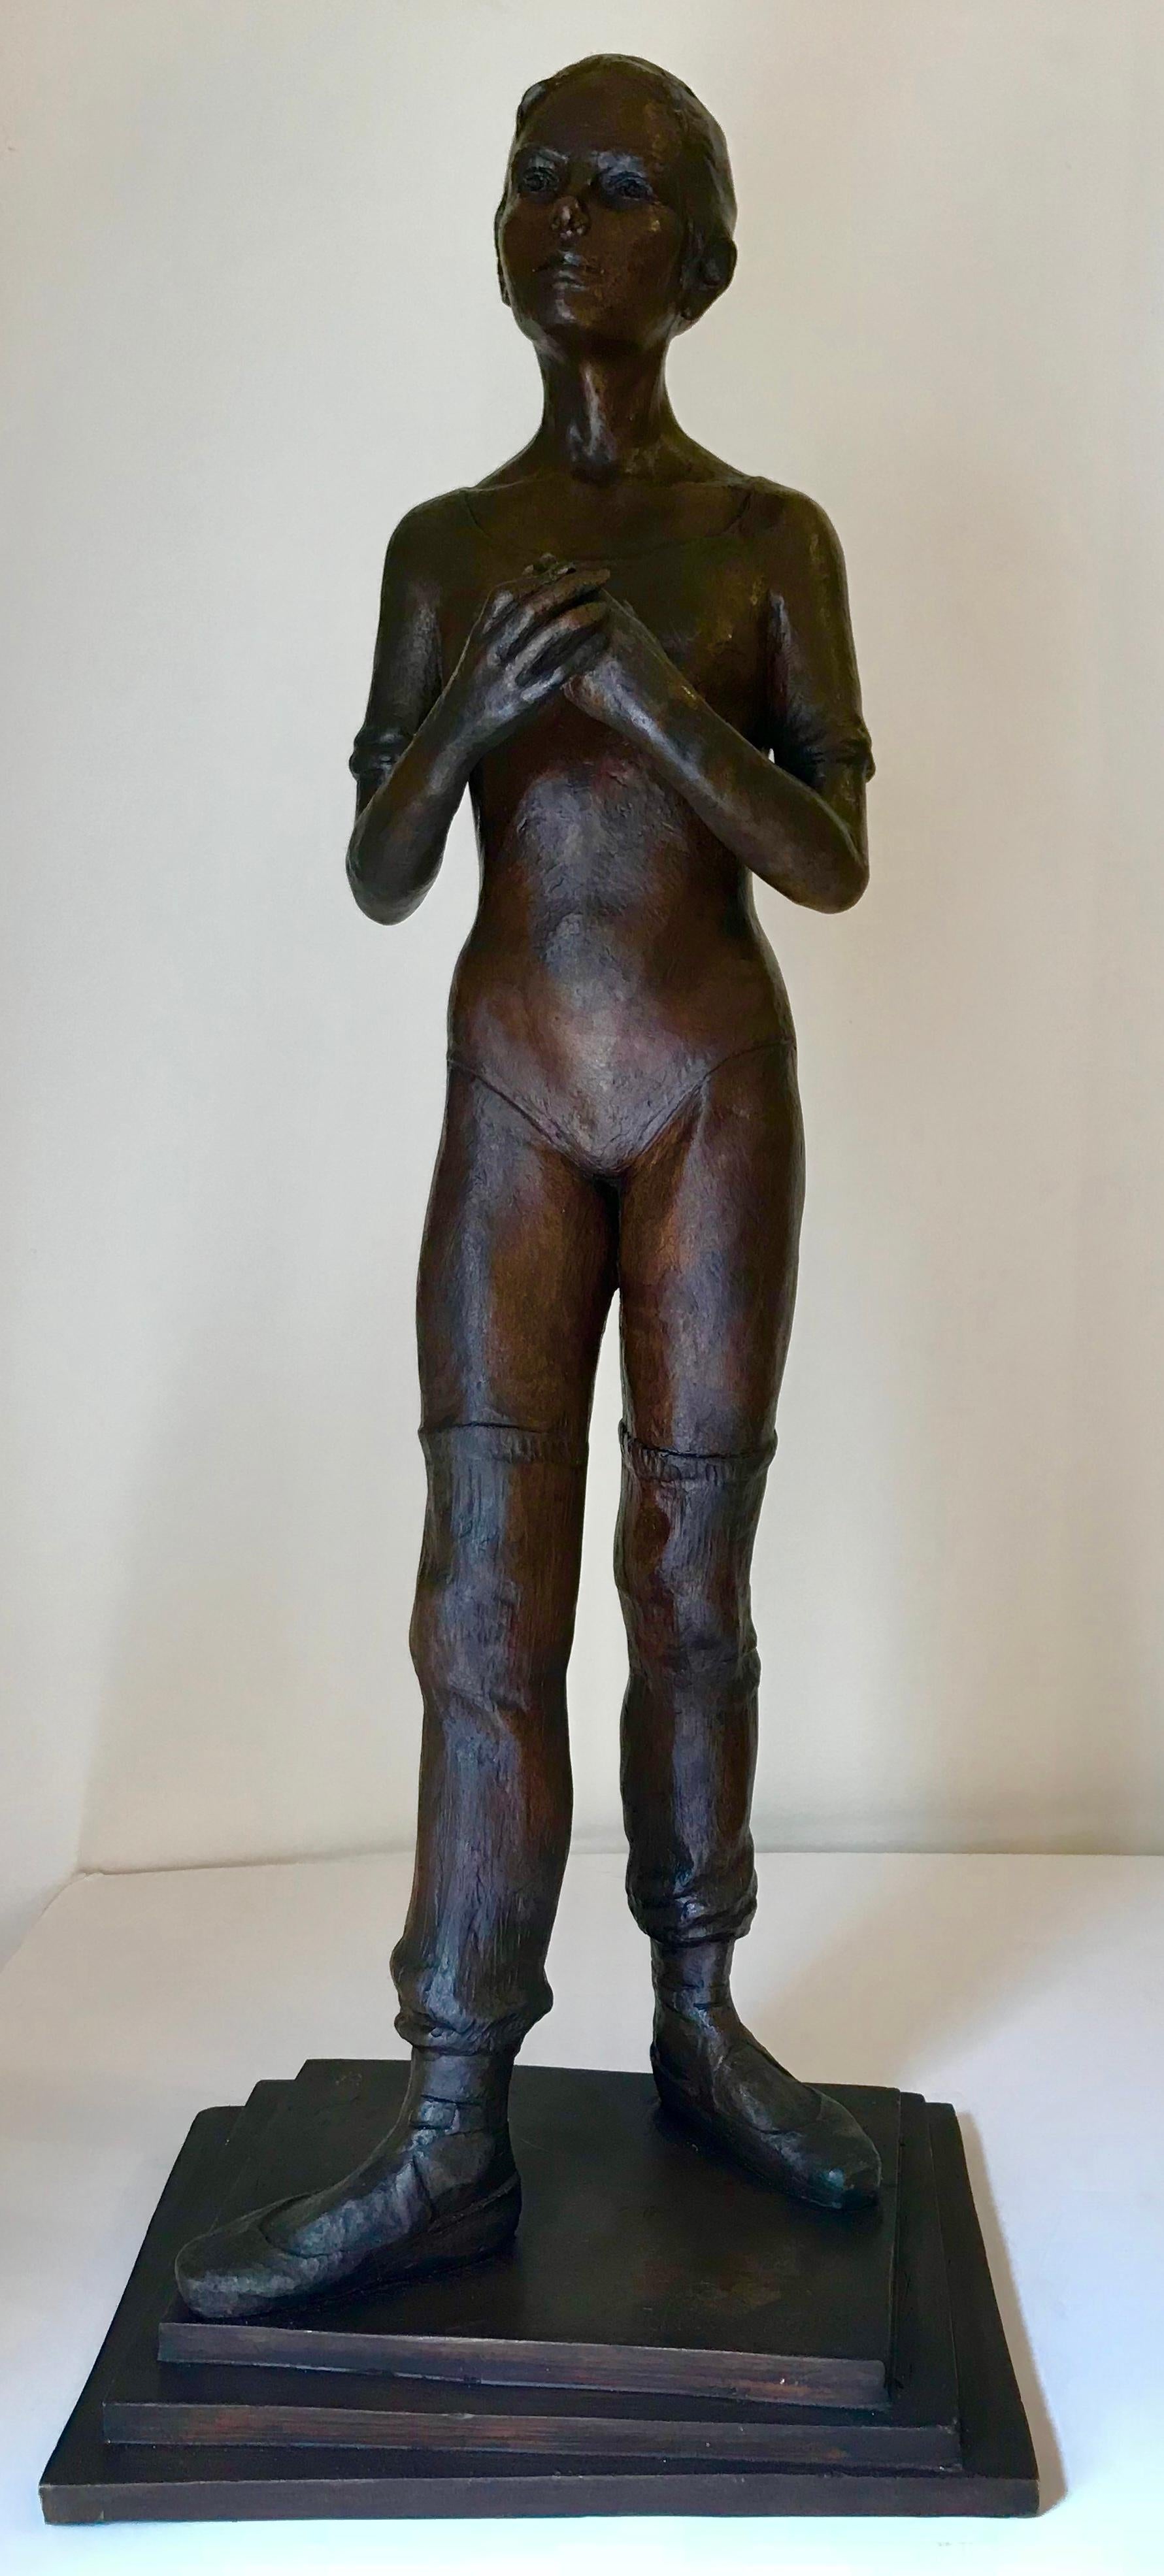 Victor Manuel Villarreal Figurative Sculpture - "Warming Up"